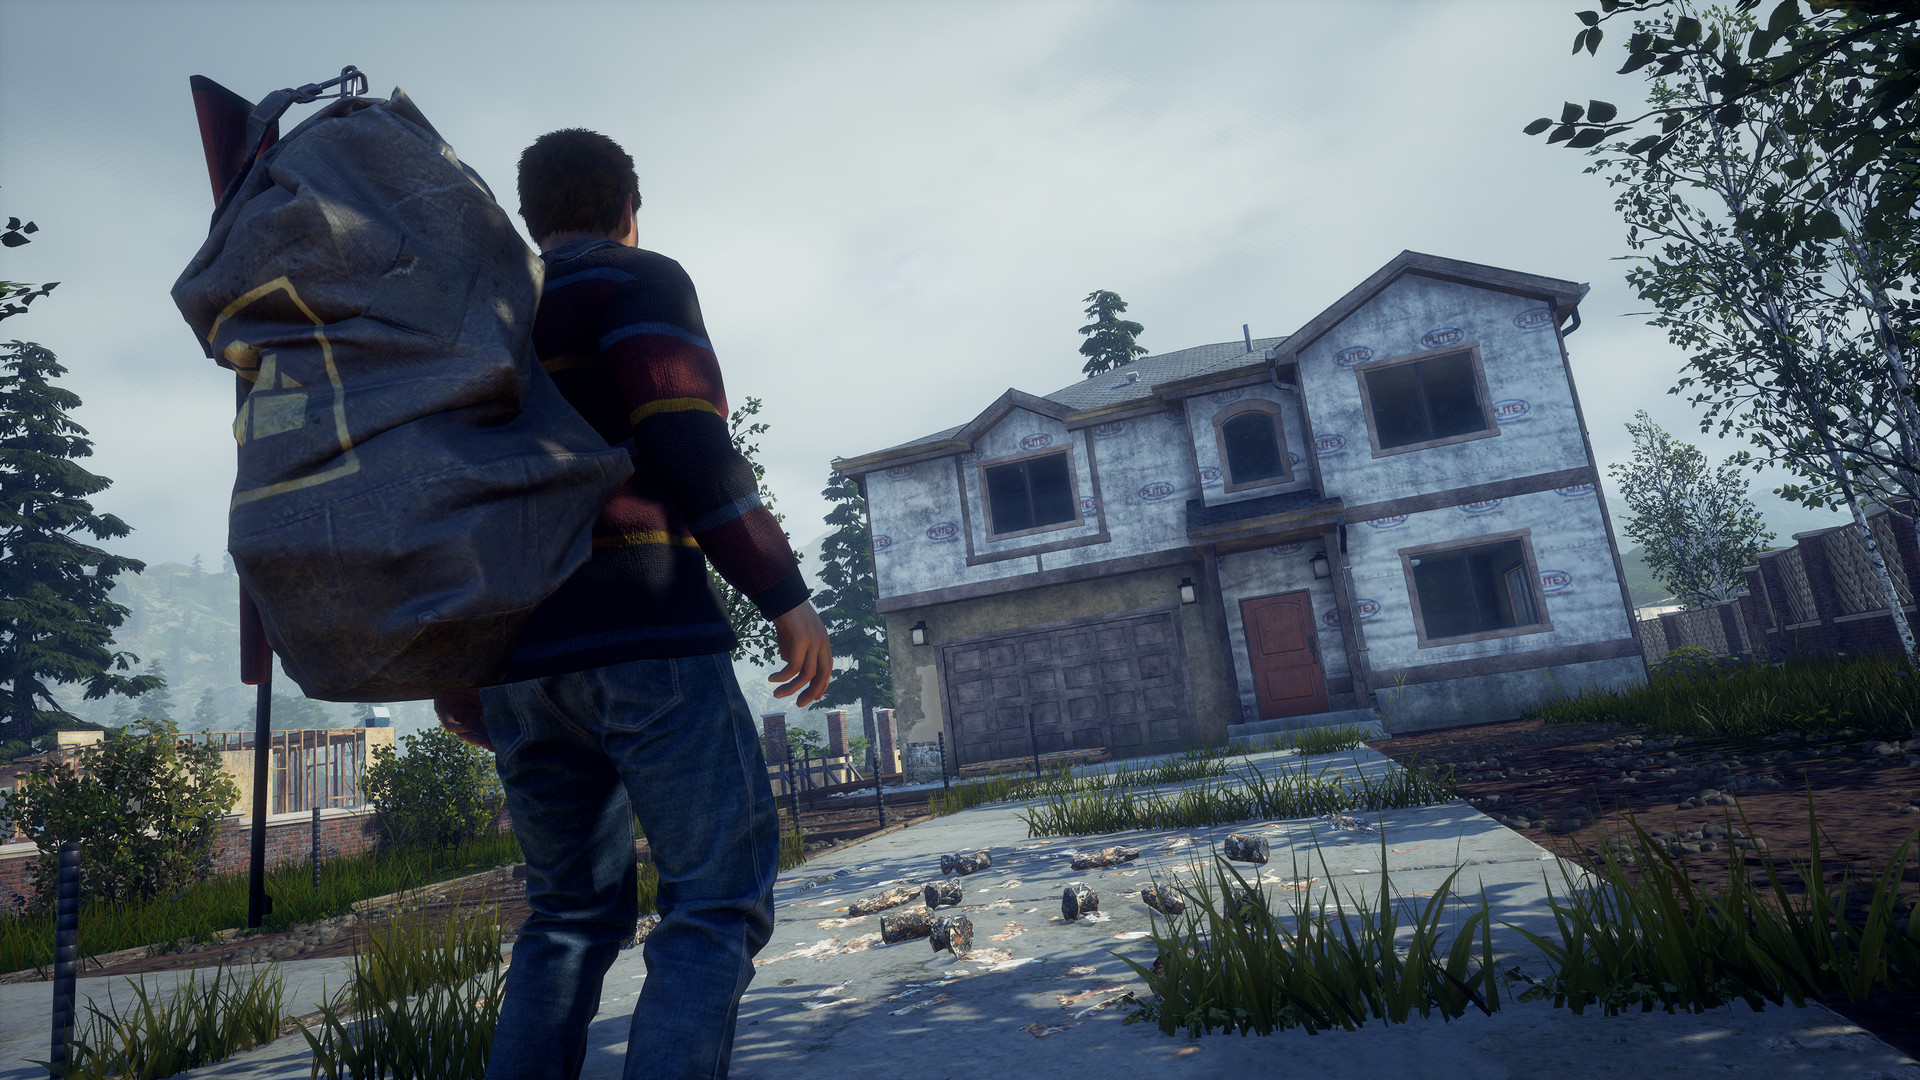 State of Decay 2 será lançado na Steam em março com novo mapa e